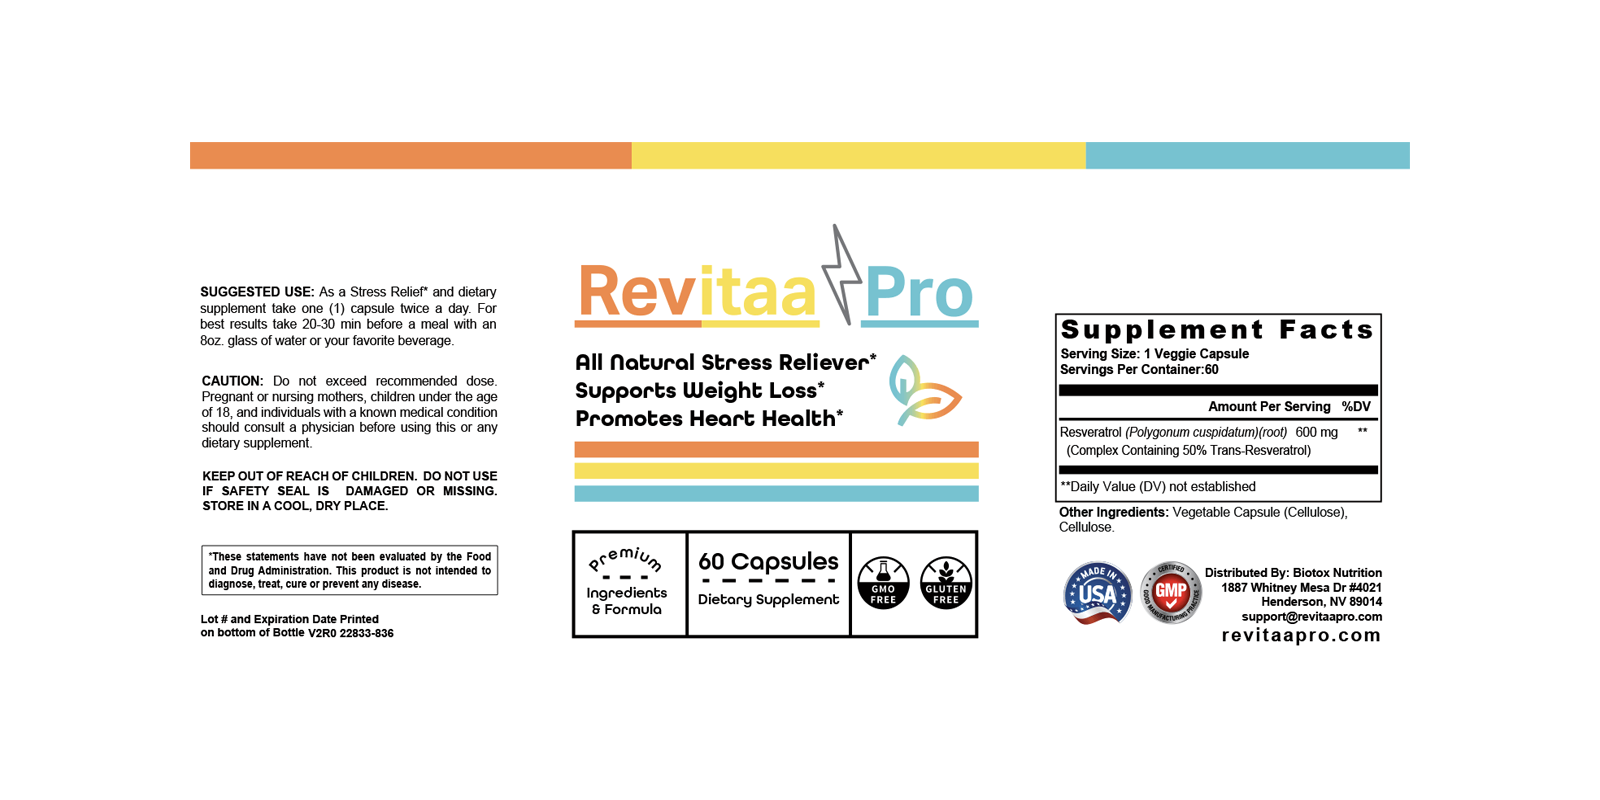 Revitaa Pro Ingredients Label